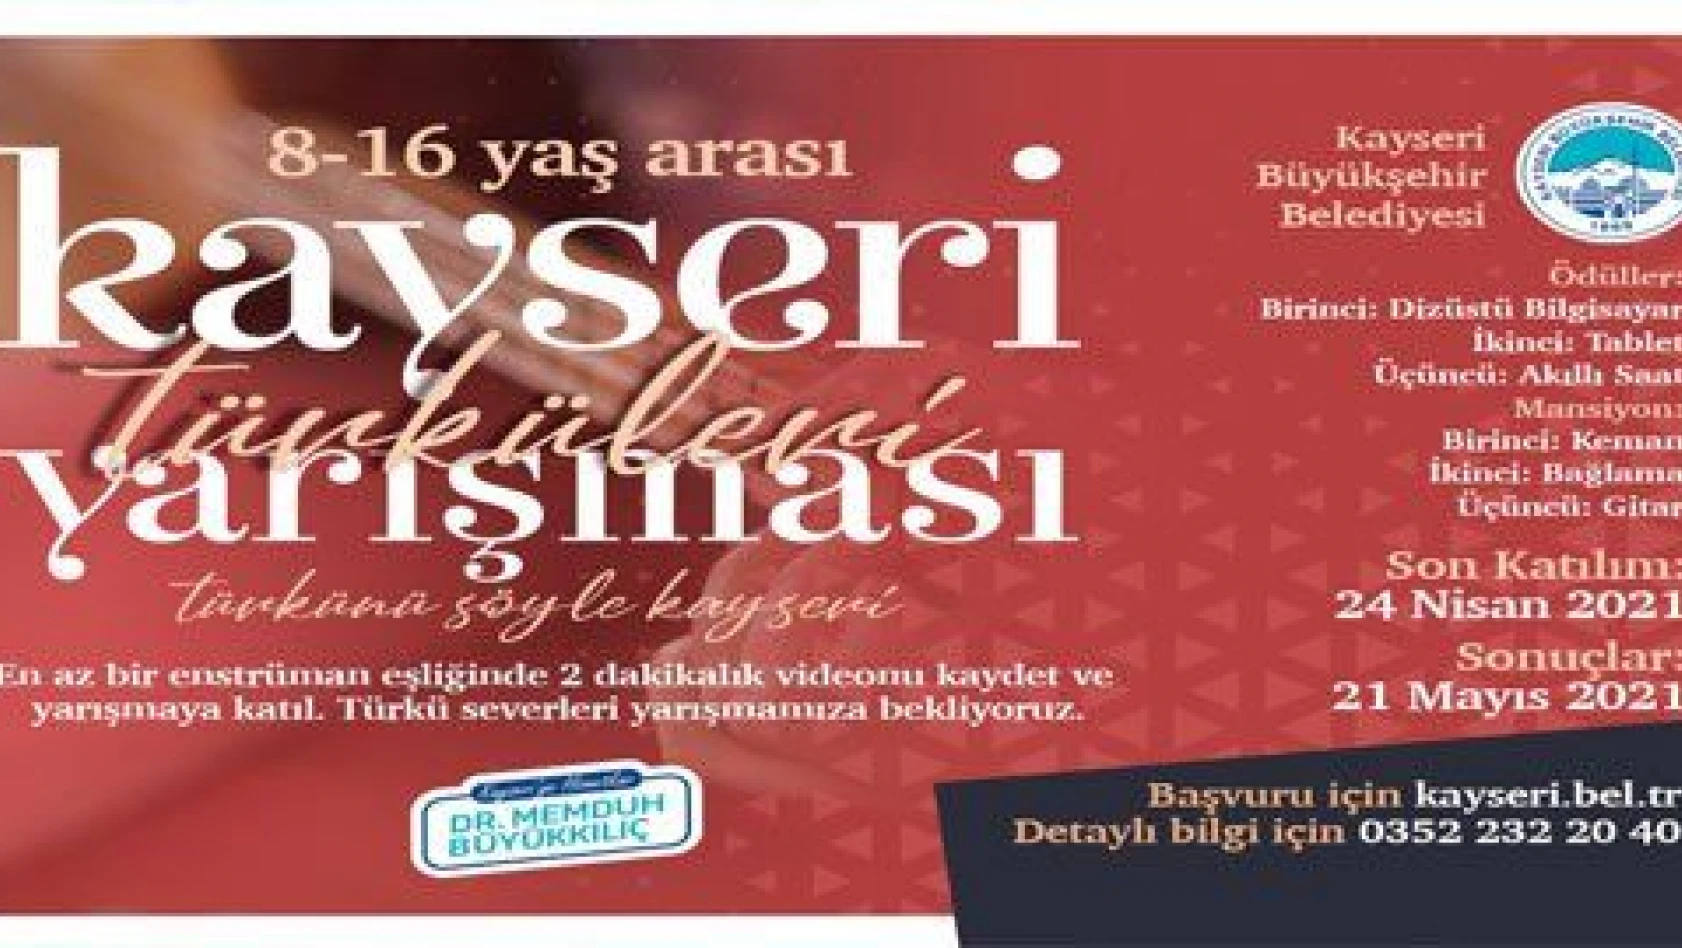 Kayseri Türküleri Yarışması'nda başvurular devam ediyor